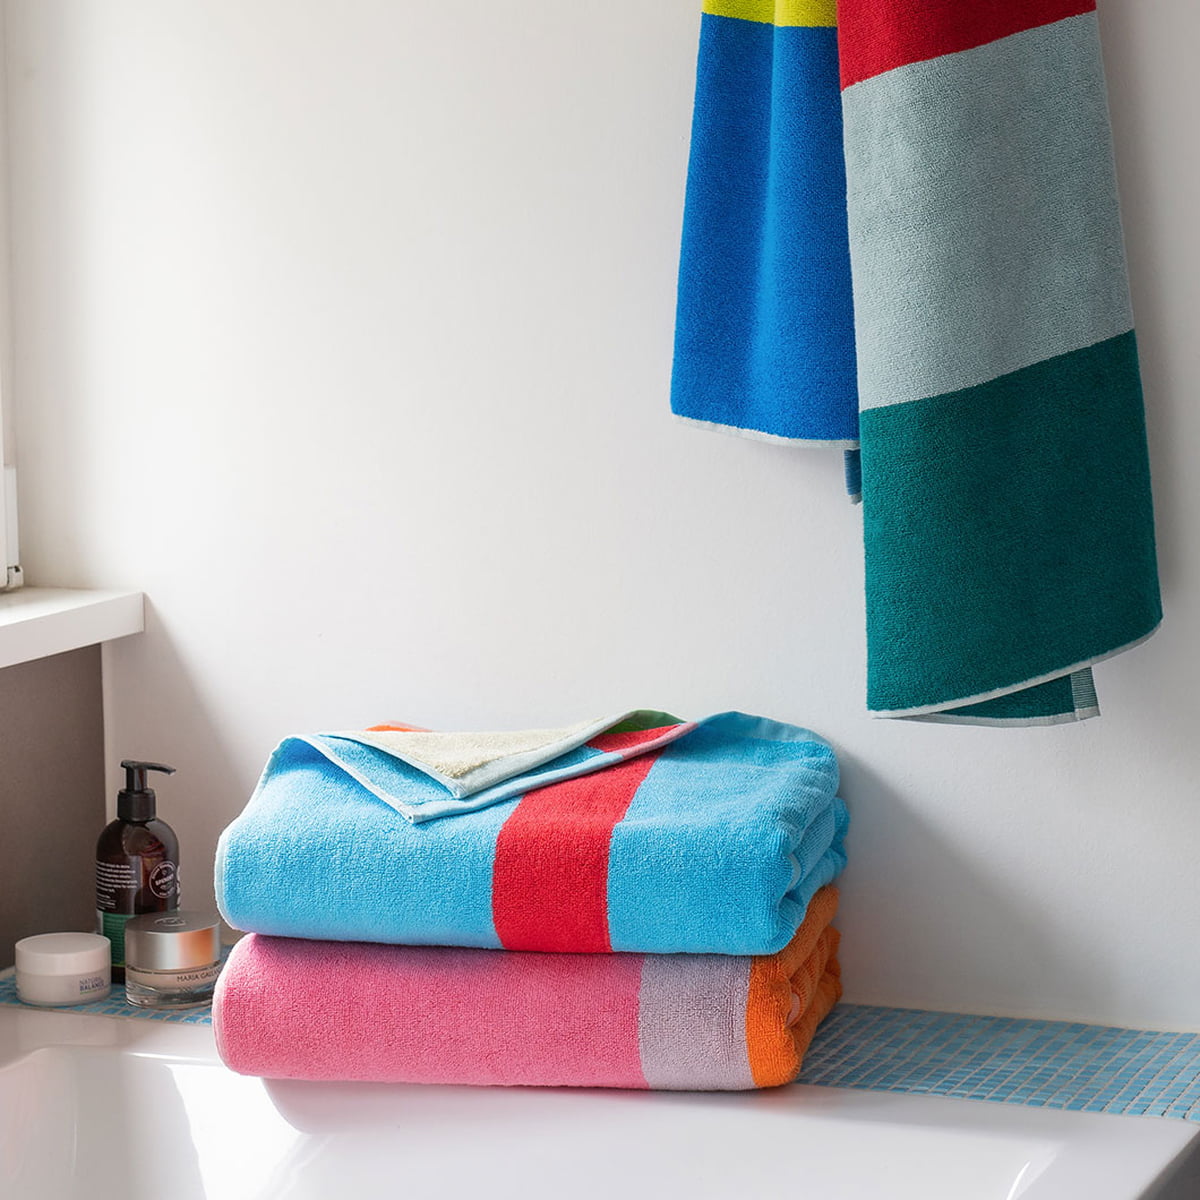 Cotton Multistriped Bath Towels Soft Large Size Towels Set of 2 Multicolor